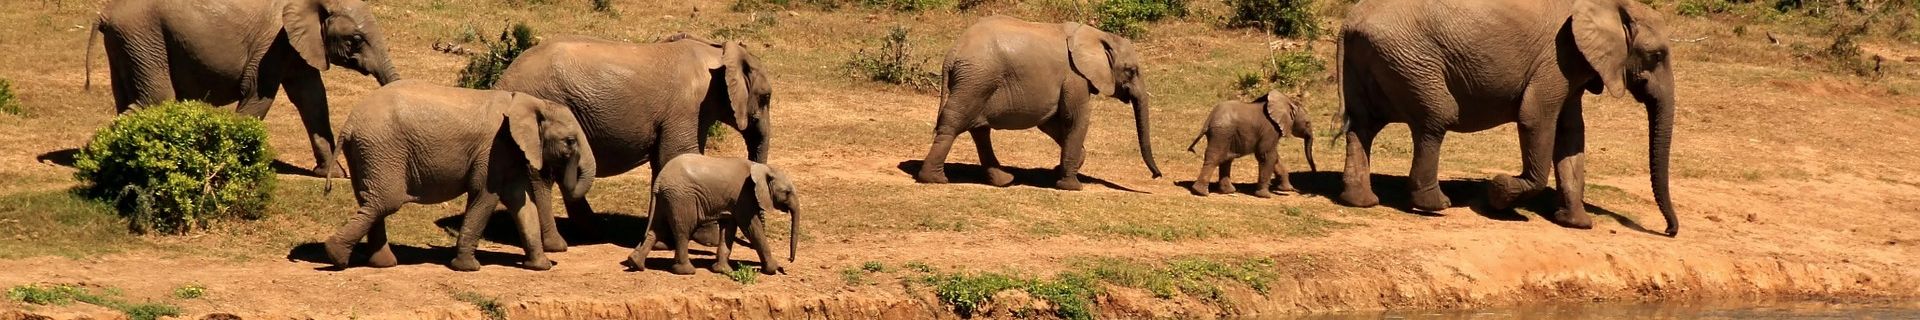 Elefantenfamilie Tansania